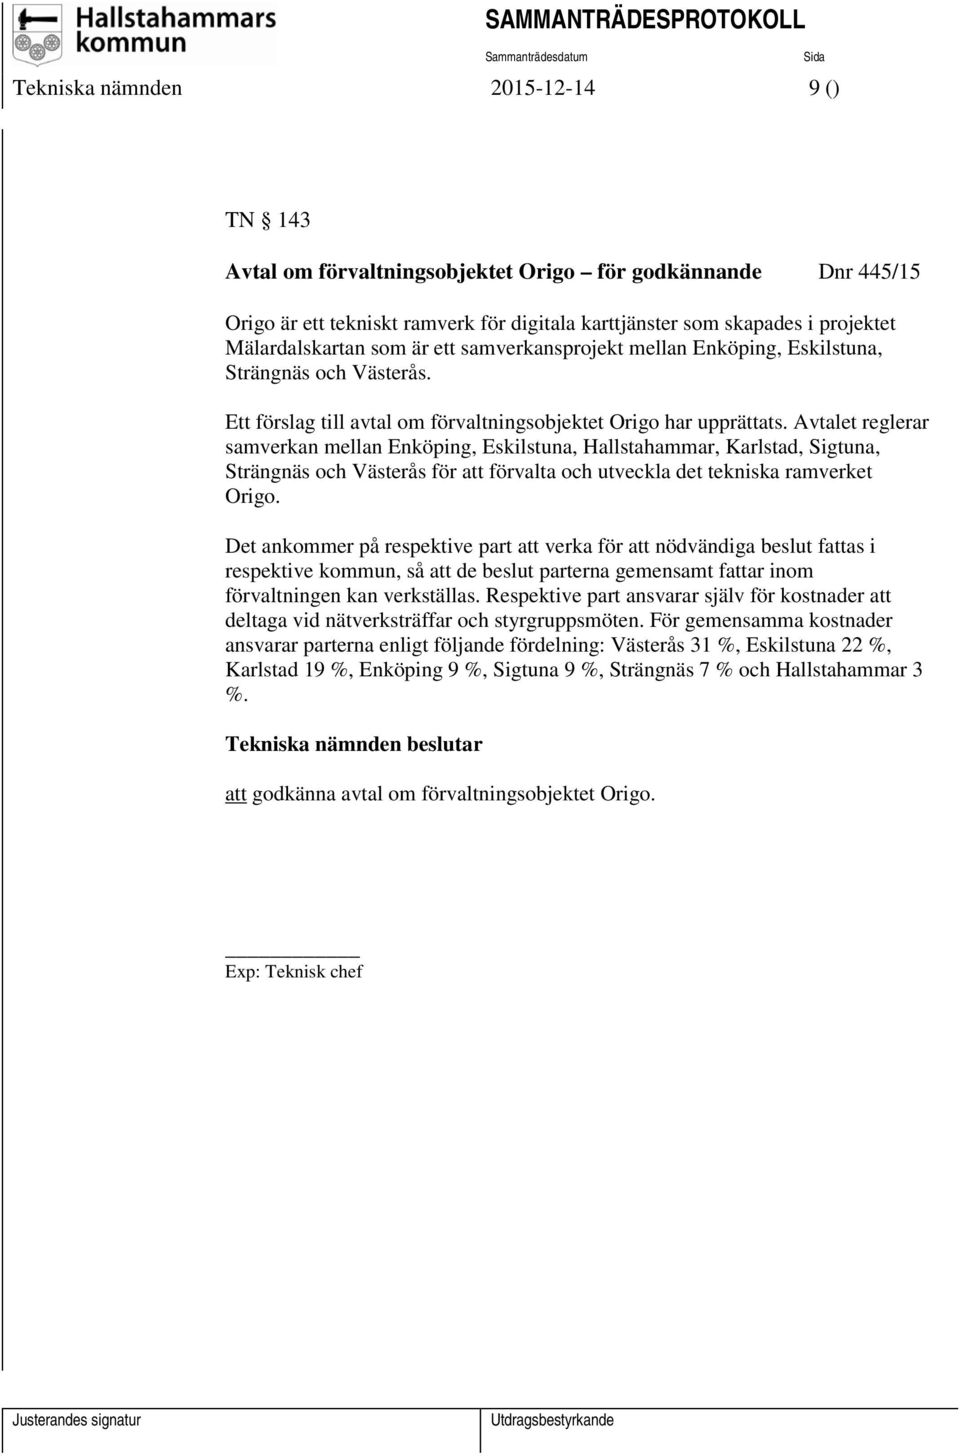 Avtalet reglerar samverkan mellan Enköping, Eskilstuna, Hallstahammar, Karlstad, Sigtuna, Strängnäs och Västerås för att förvalta och utveckla det tekniska ramverket Origo.